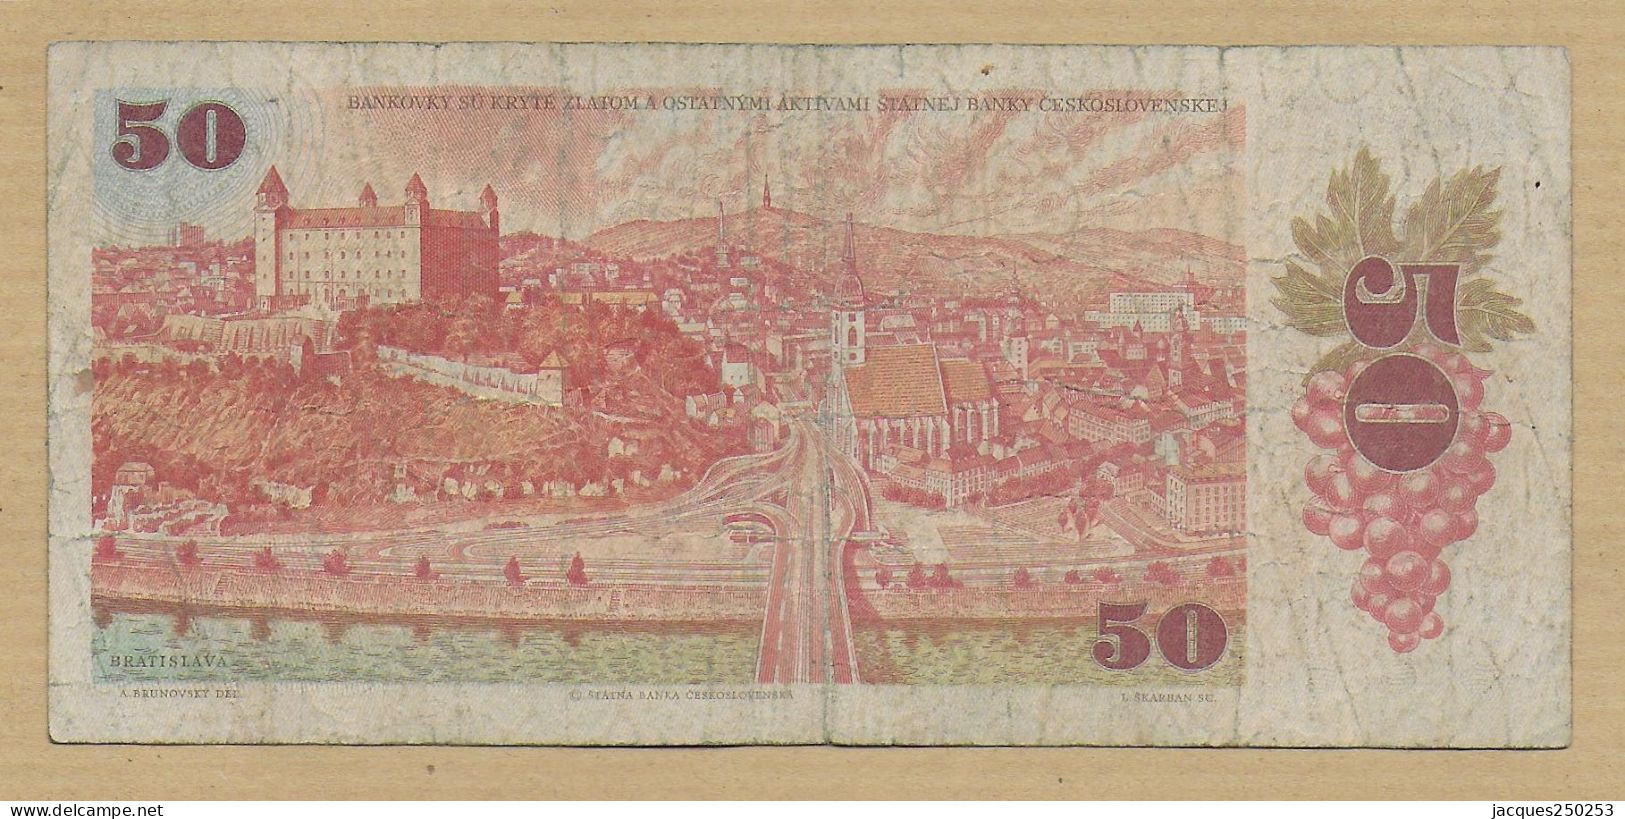 50 KORUN 1987 Circulé - Czechoslovakia